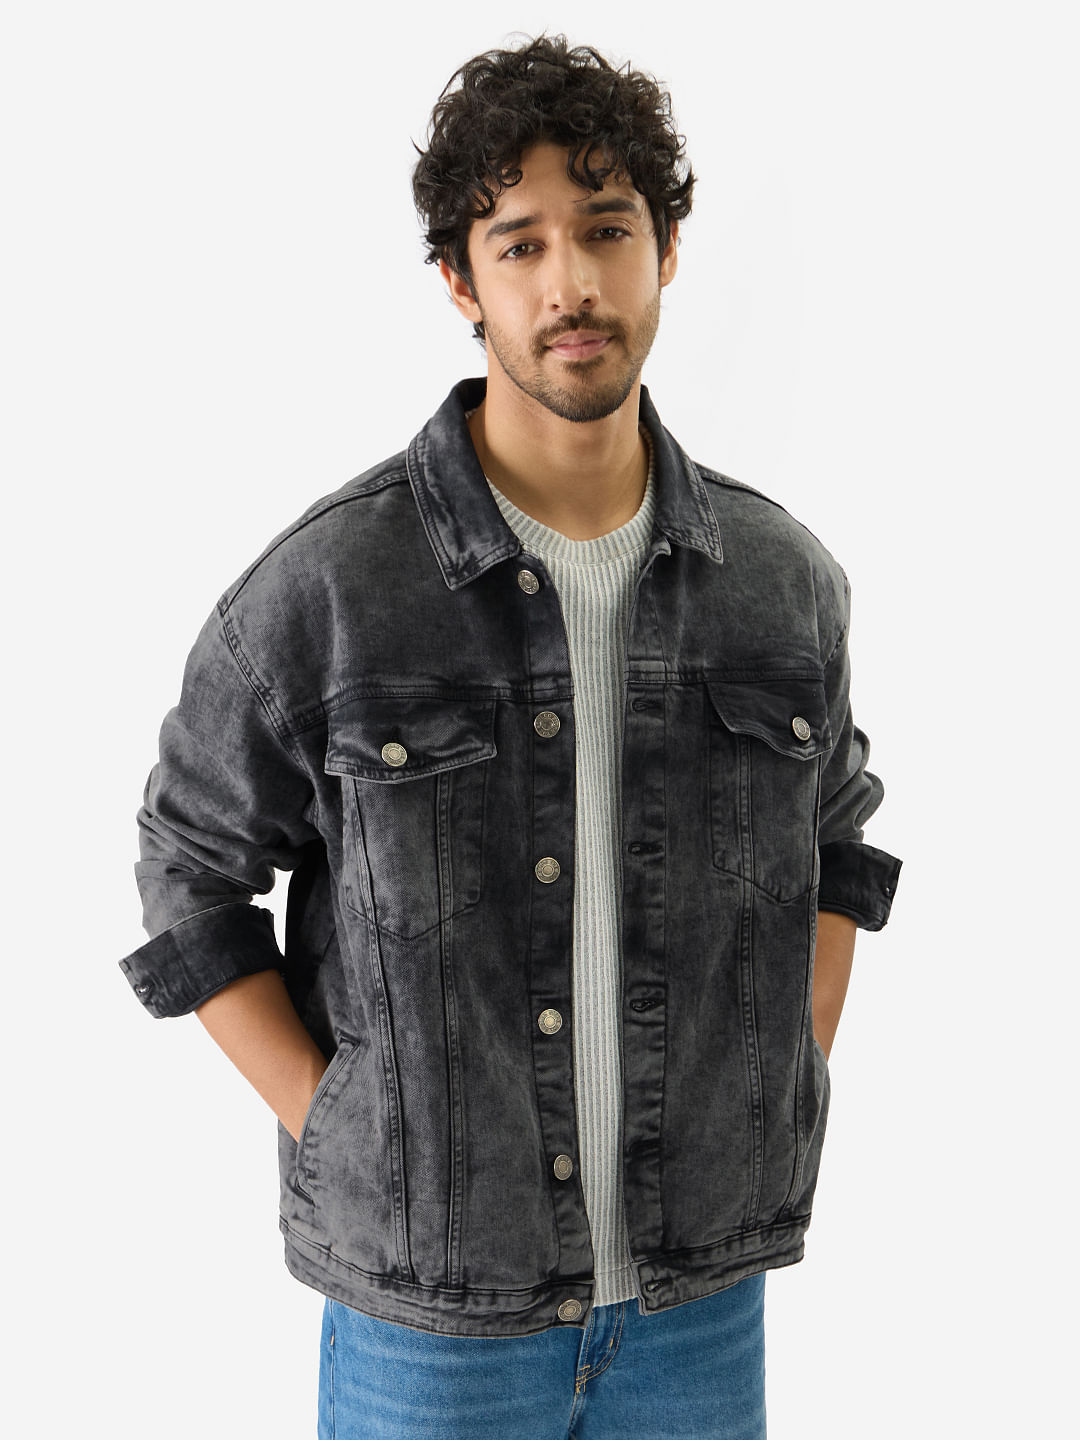 Regular Fit Men Jeans Jackets - Buy Regular Fit Men Jeans Jackets online in  India